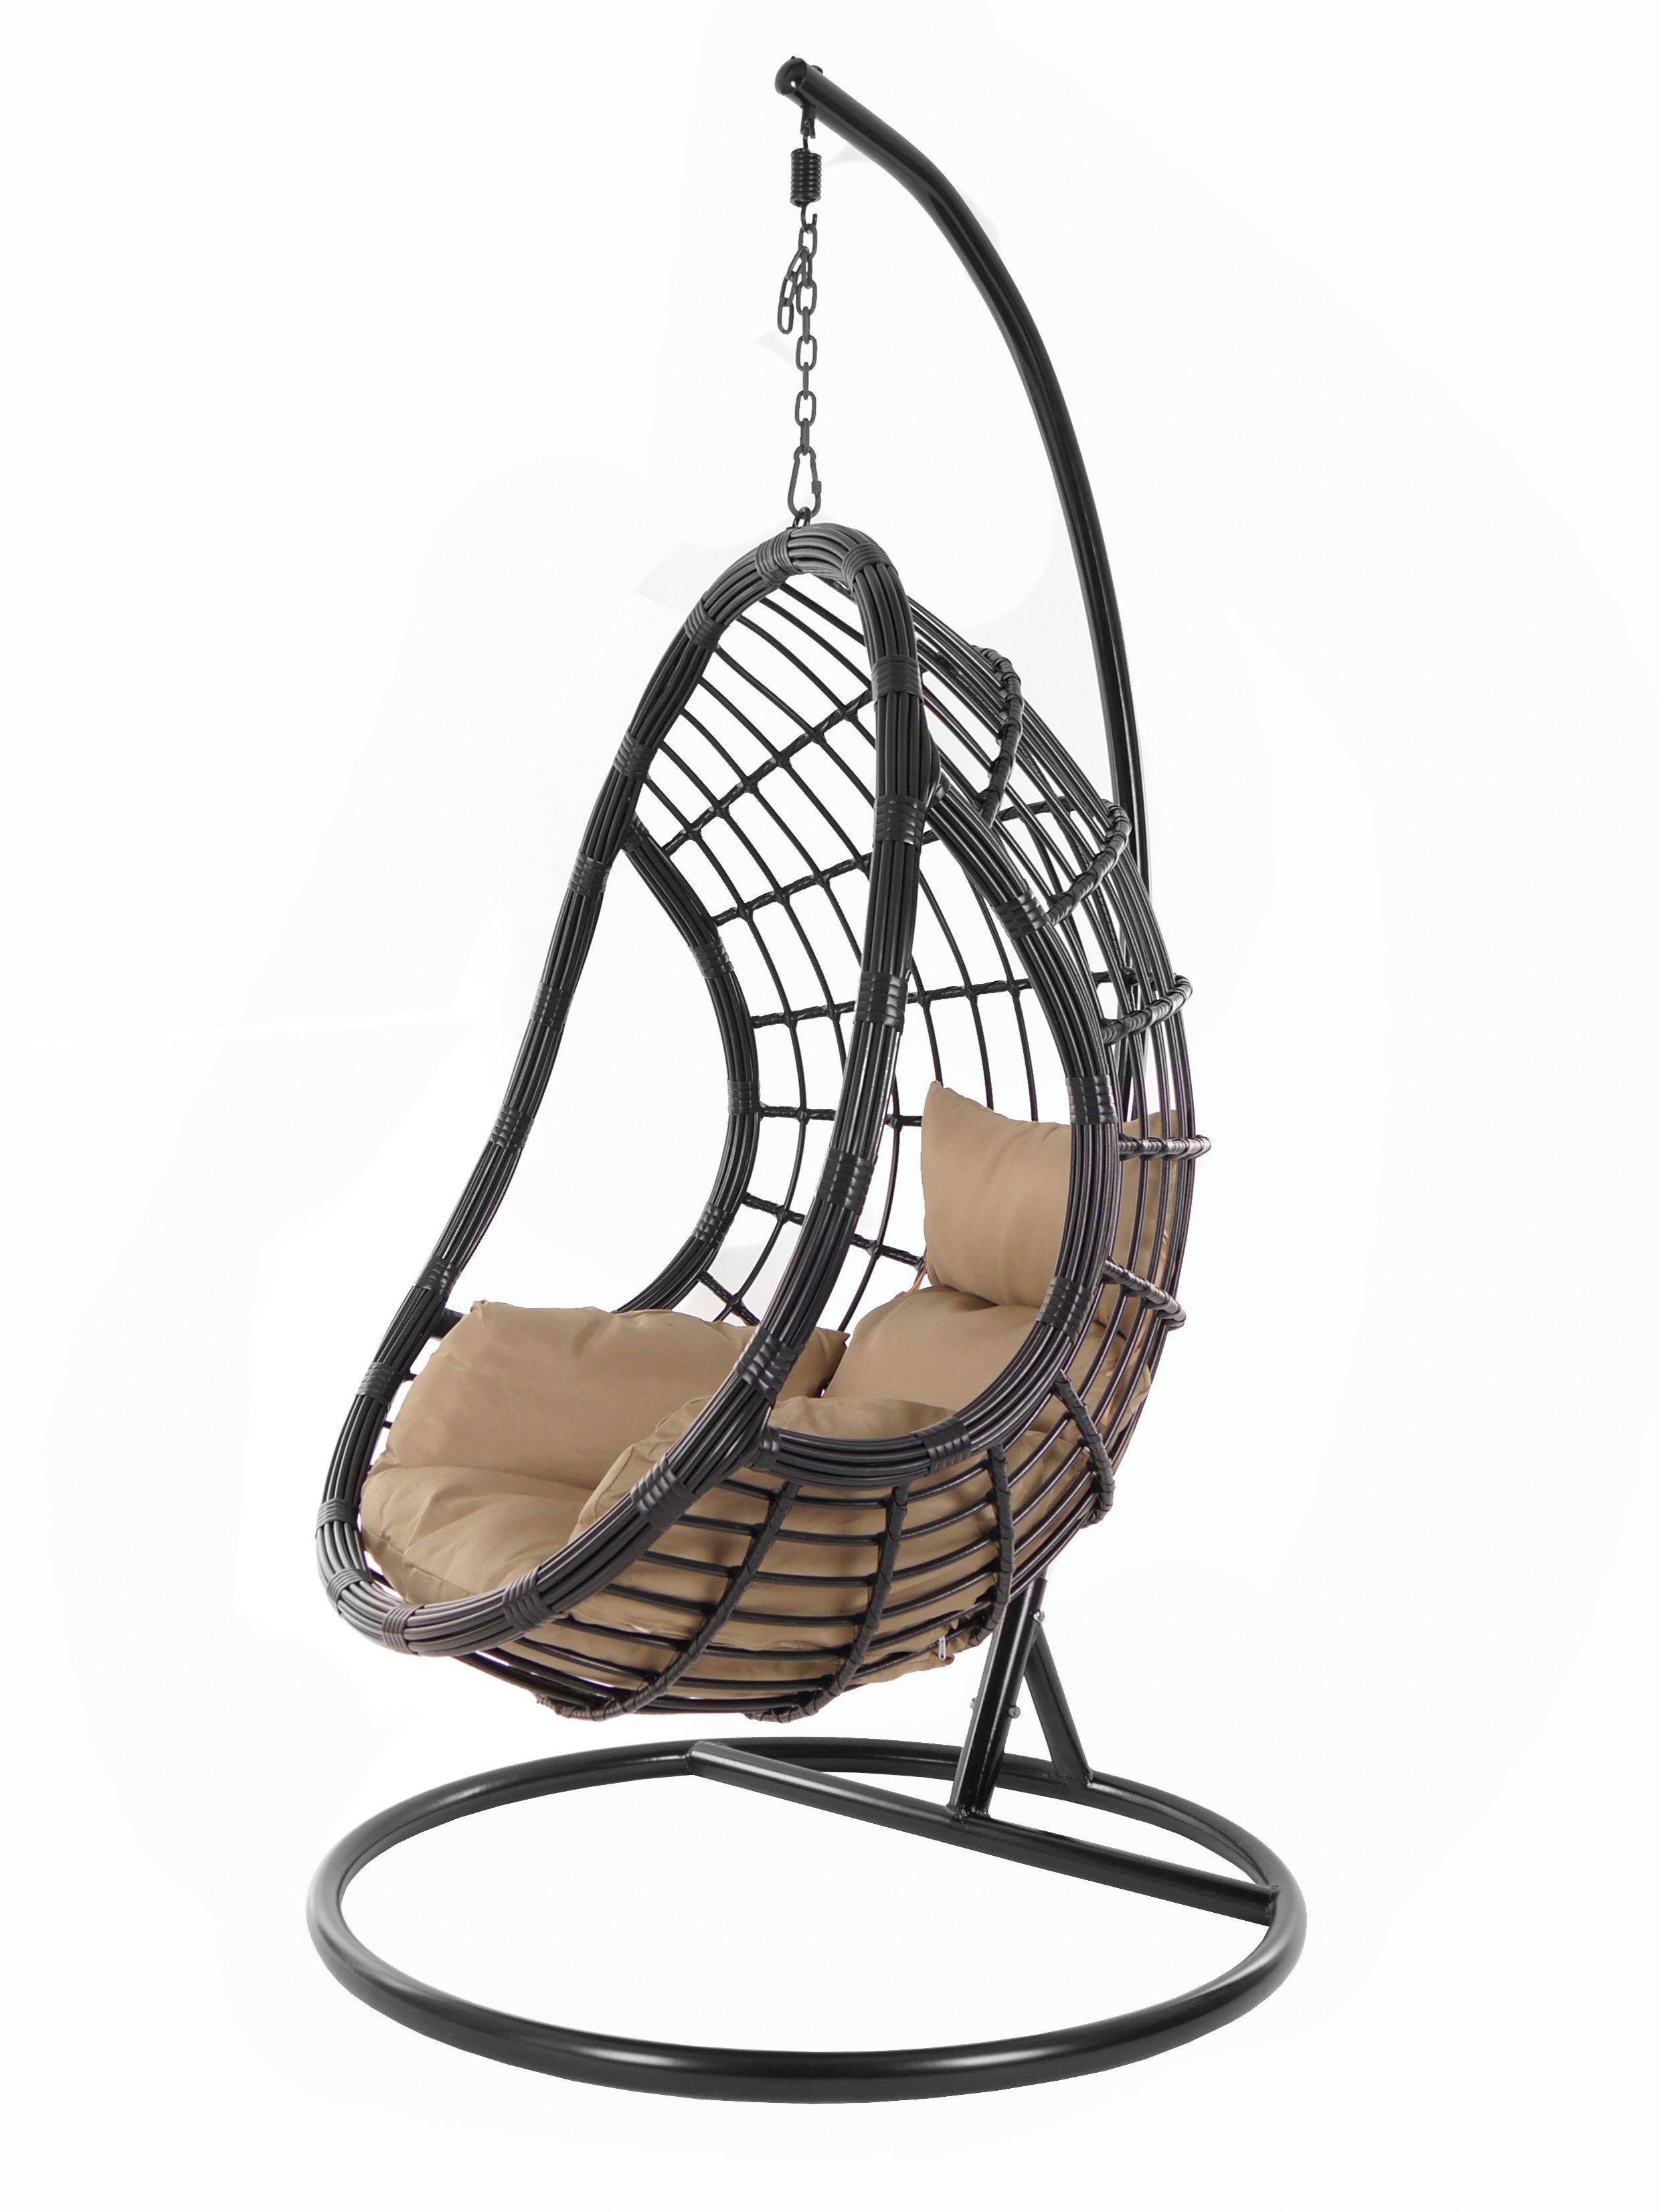 KIDEO Hängesessel PALMANOVA black, Schwebesessel, Swing Chair, Hängesessel mit Gestell und Kissen, Nest-Kissen haselnuss (7010 hazelnut) | Hängesessel